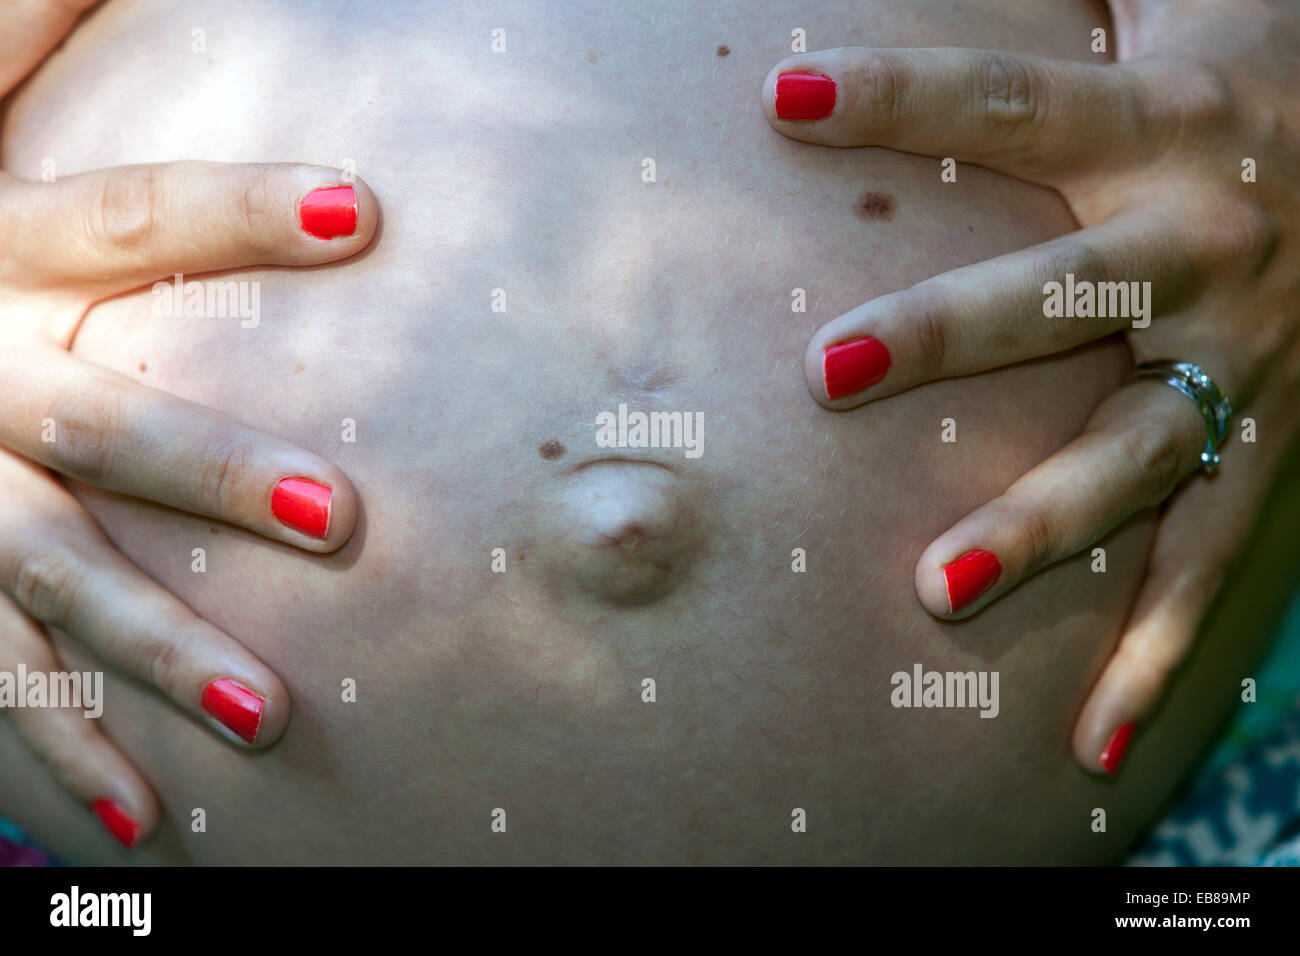 Schwangere Frau Bauch, Zehen rot Nägel gemalt, schwanger Bauch  Stockfotografie - Alamy